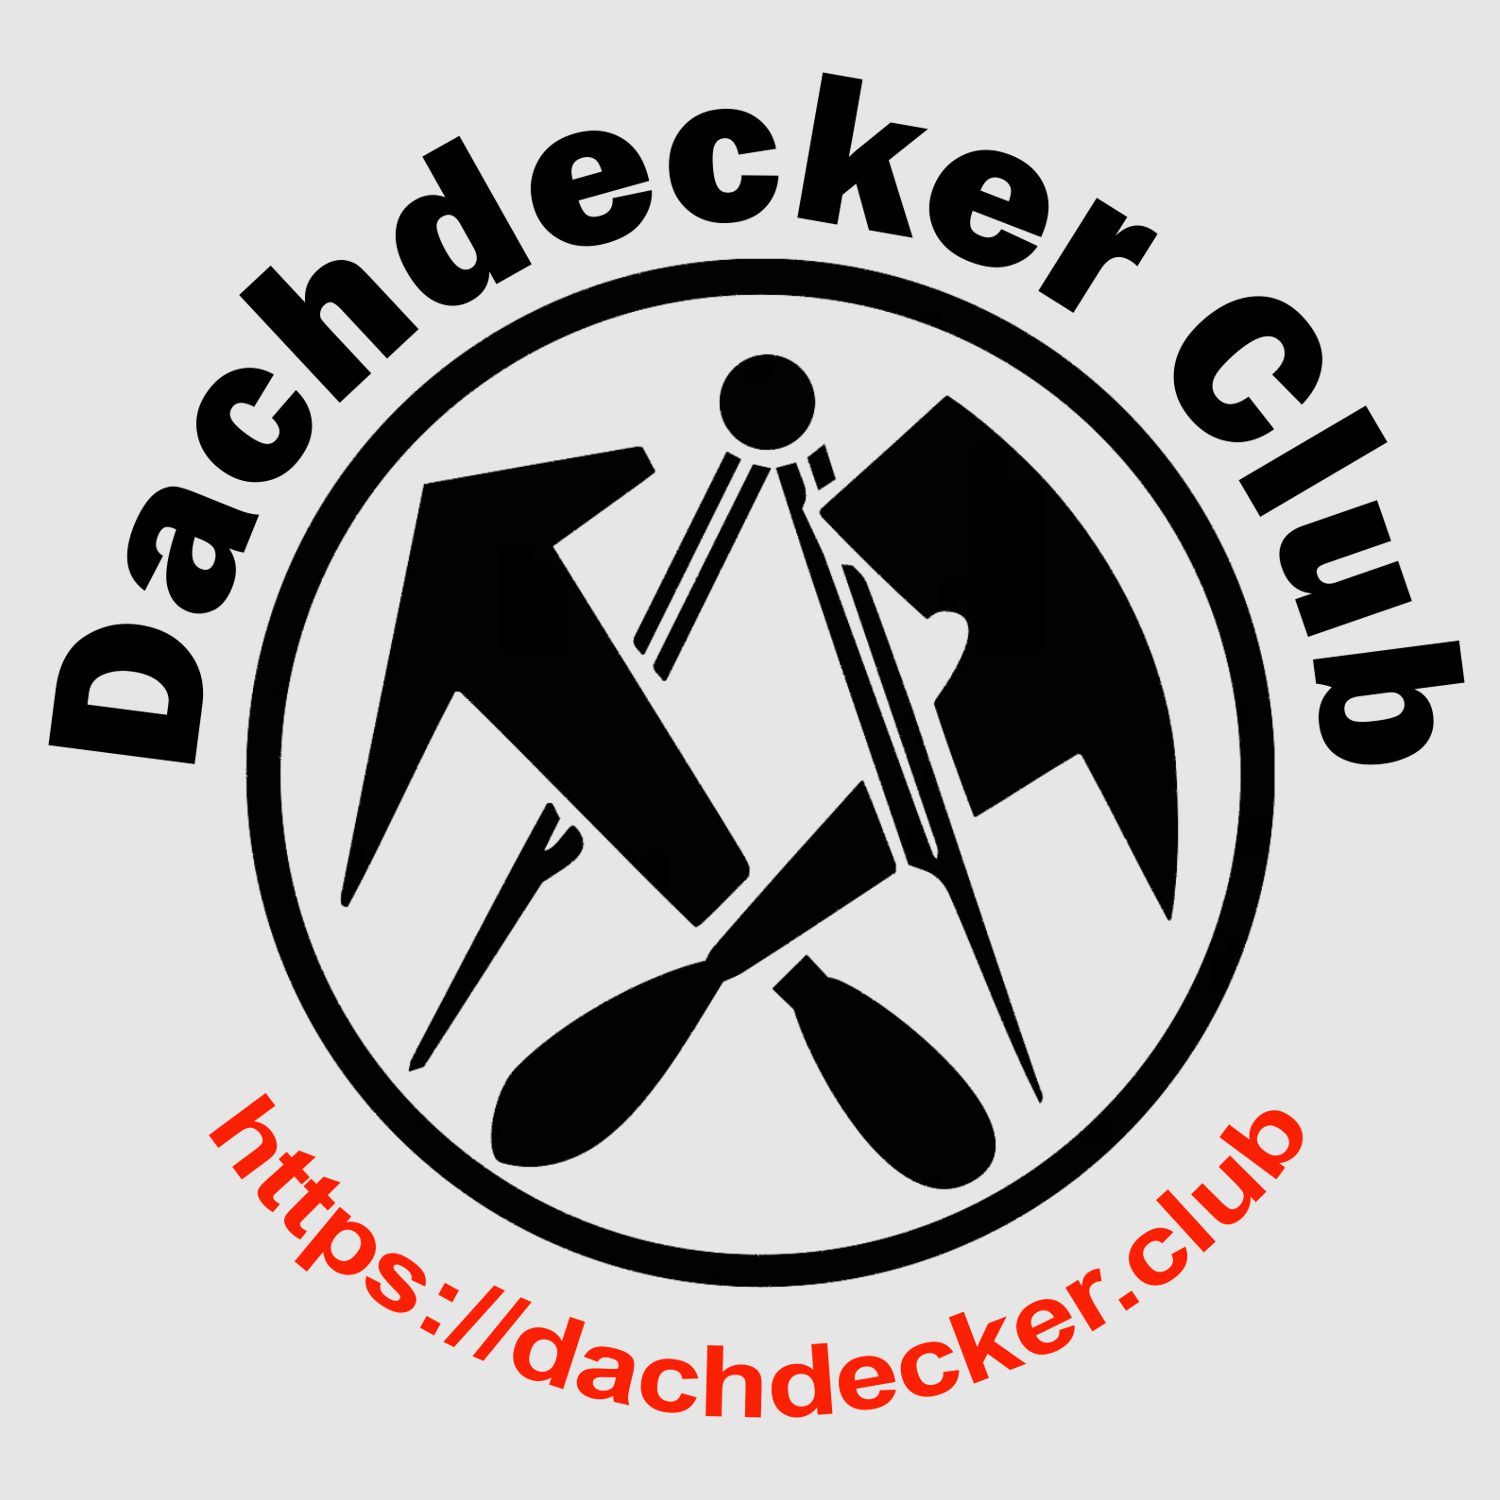 Dachdecker Club - Der Treffpunkt für Dachdecker